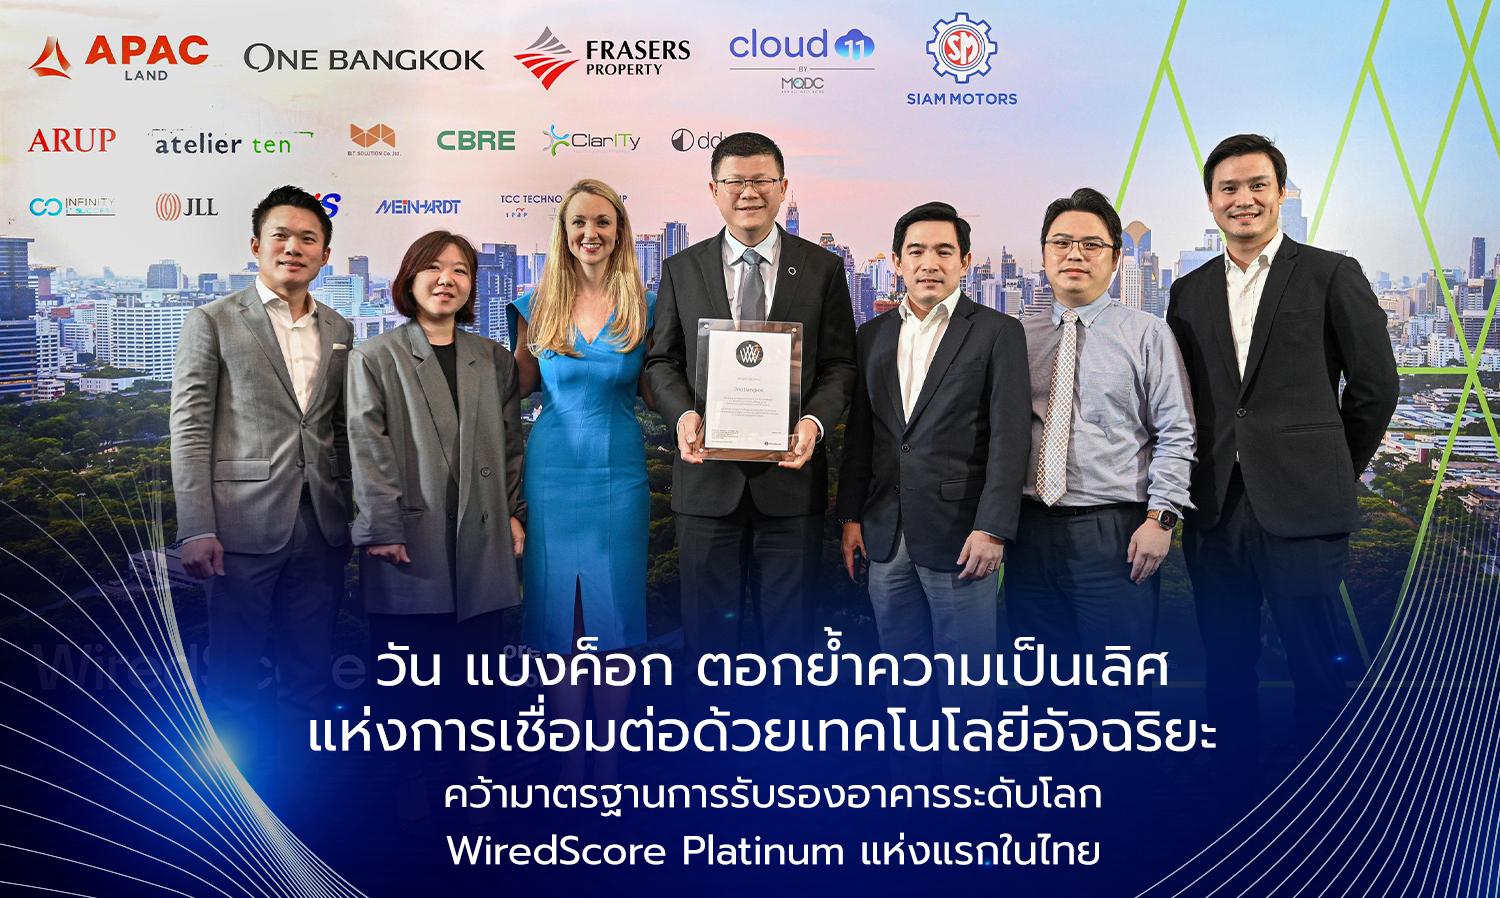 วัน แบงค็อก ตอกย้ำความเป็นเลิศแห่งการเชื่อมต่อด้วยเทคโนโลยีอัจฉริยะ  คว้ามาตรฐานการรับรองอาคารระดับโลก WiredScore Platinum แห่งแรกในไทย 